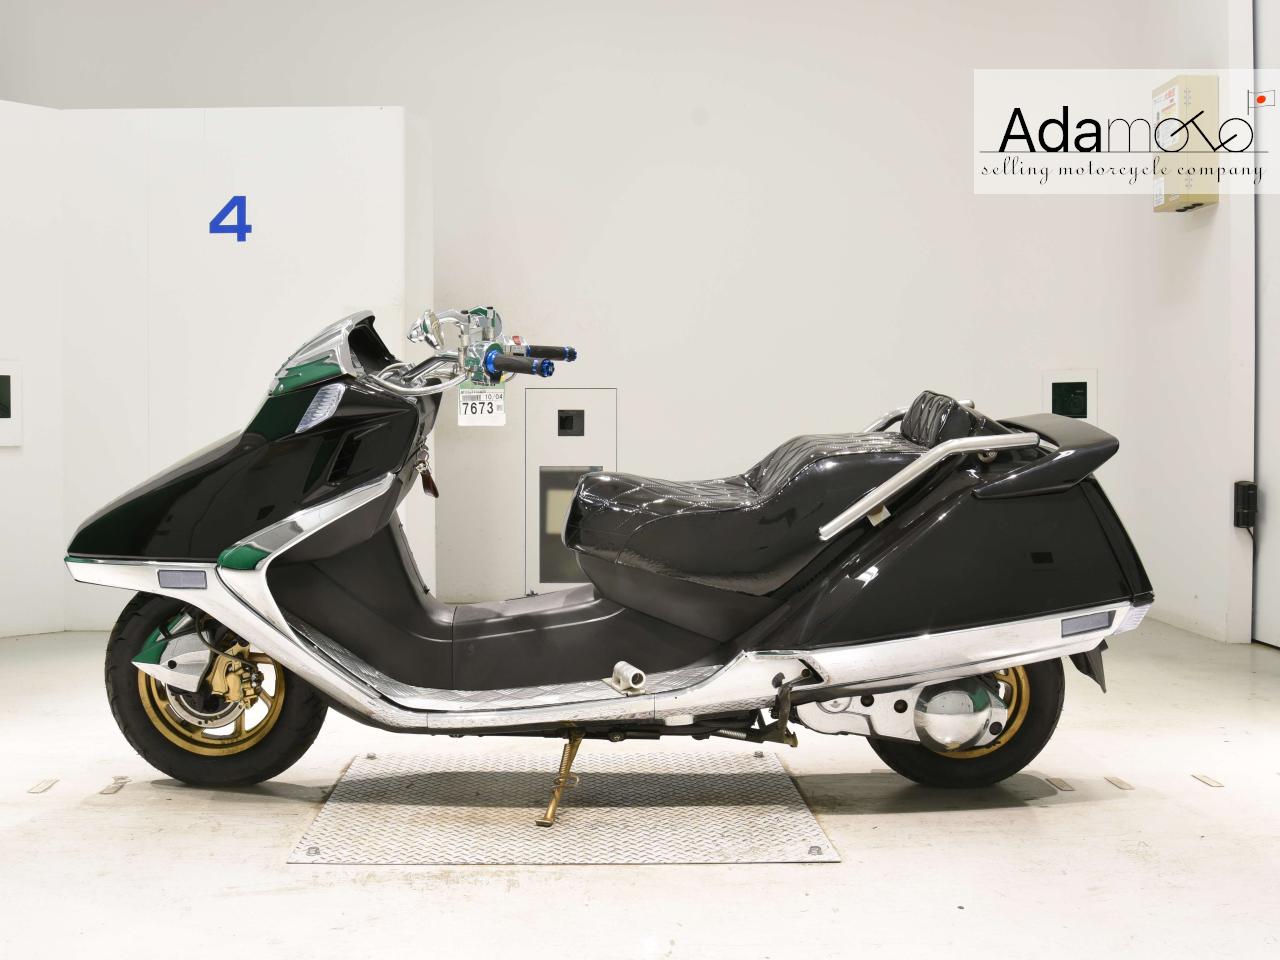 Honda FUSION - Adamoto - Motorcycles from Japan